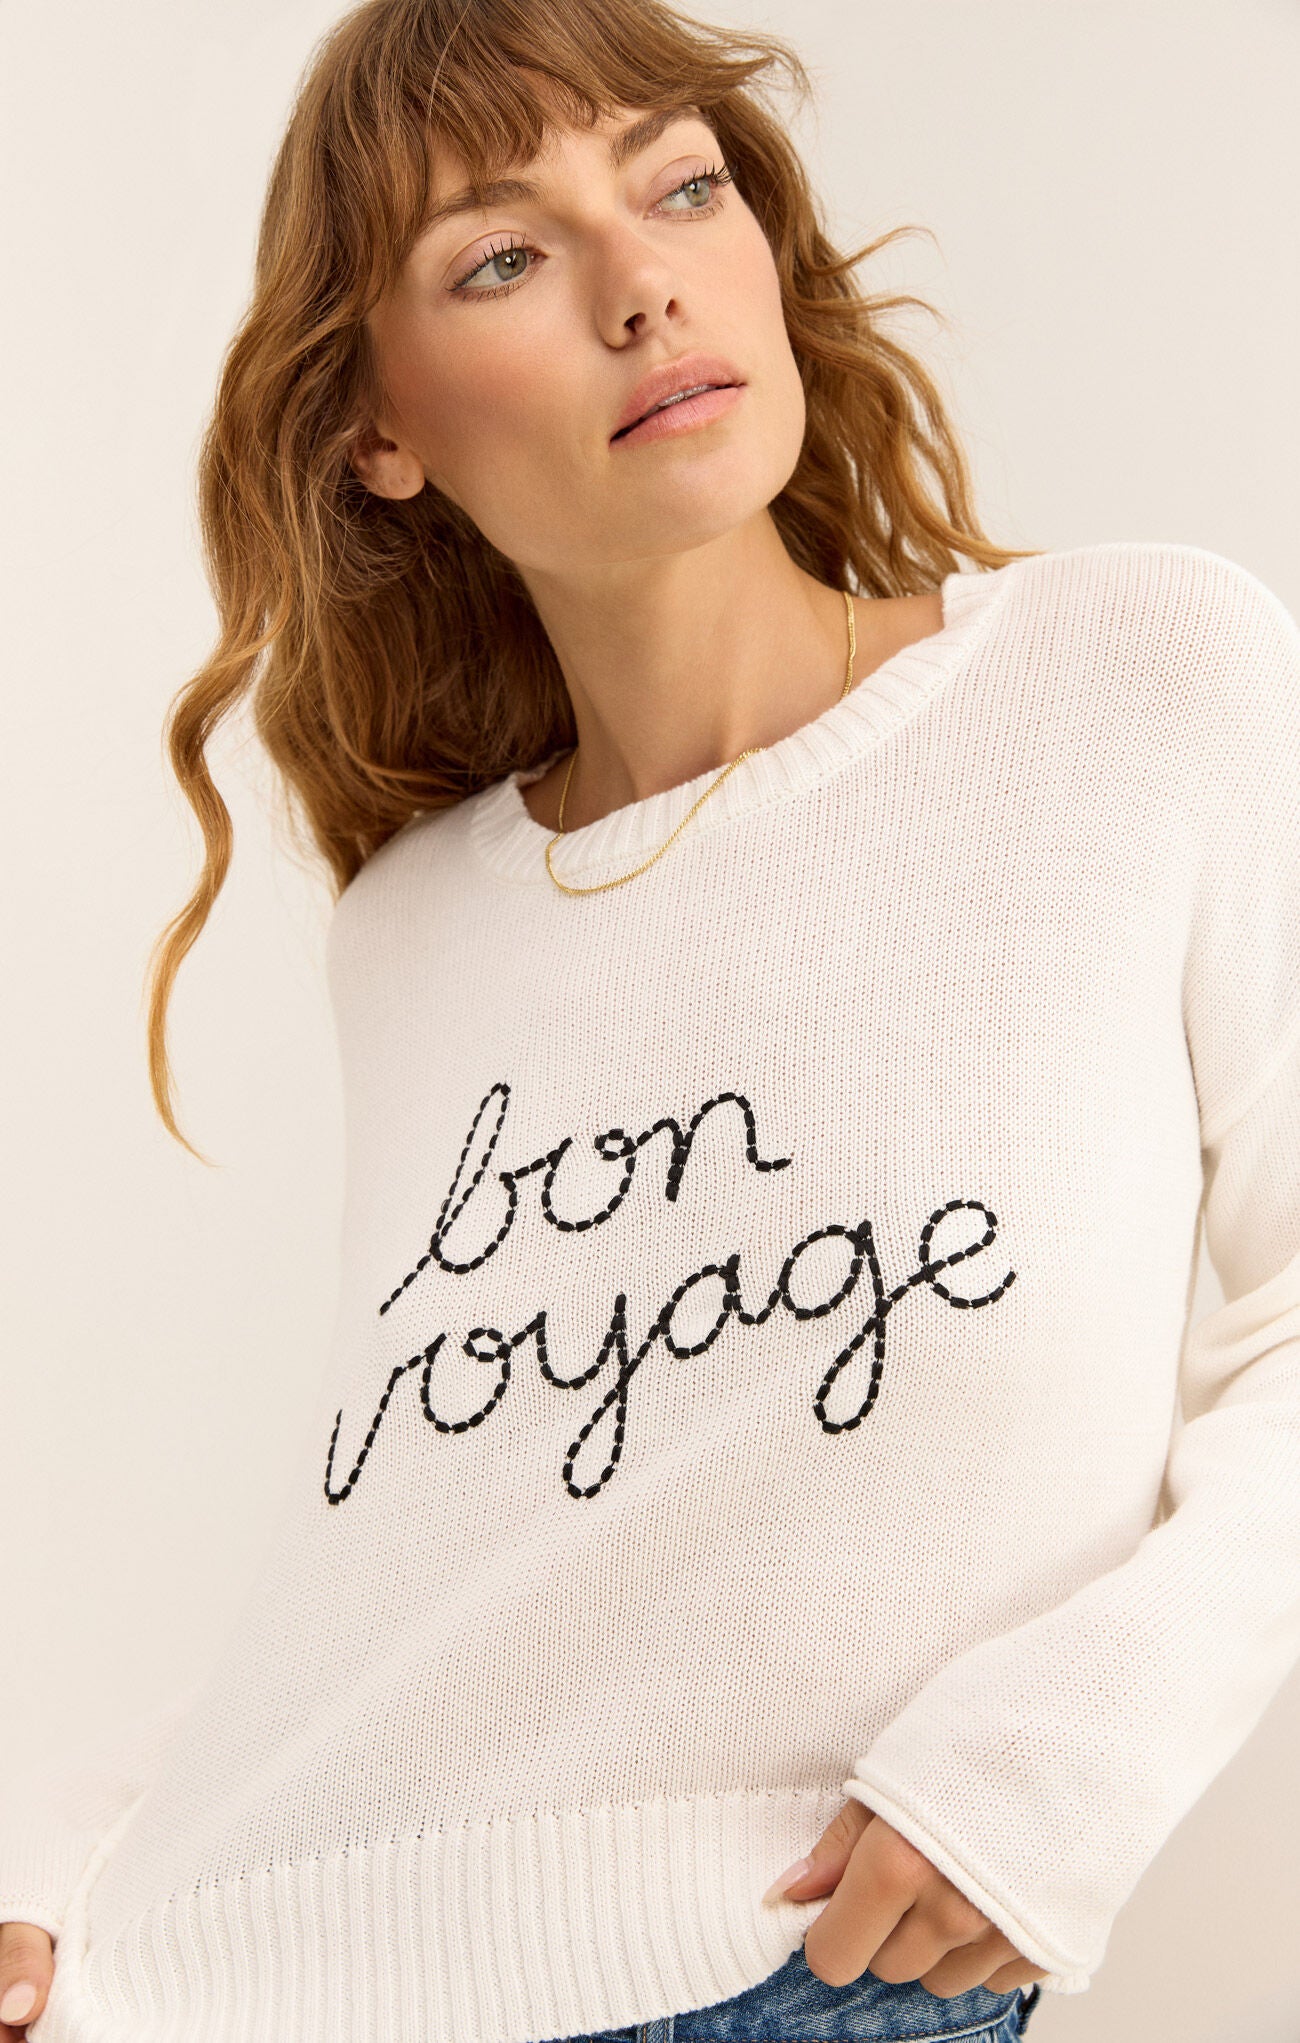 Bon Voyage Sienna Sweater - s a m & l e x